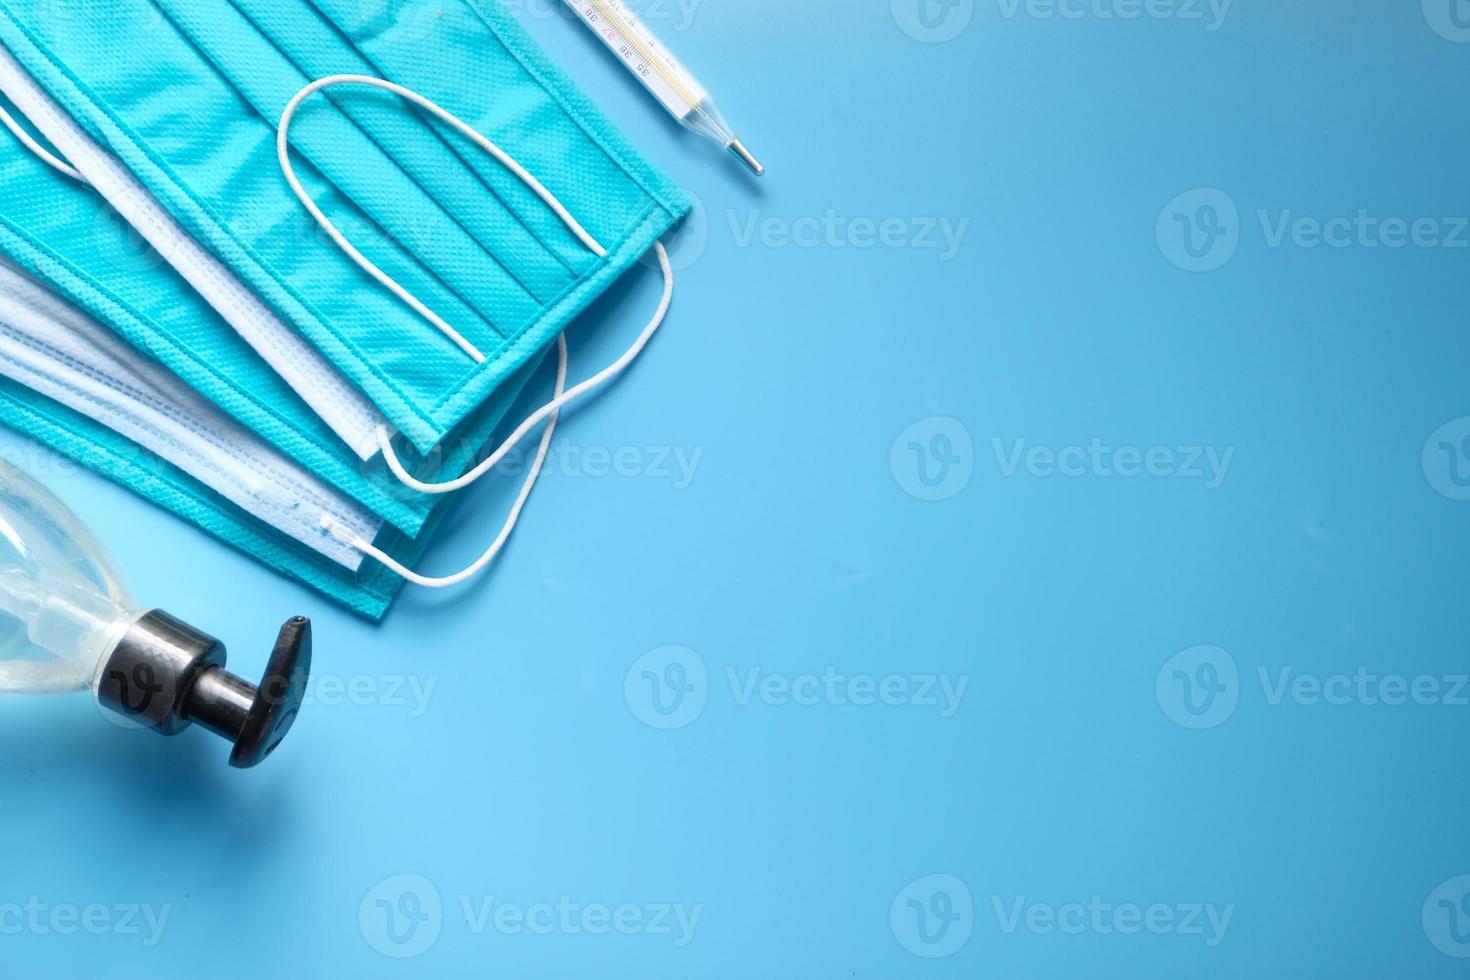 maschere chirurgiche, termometro e disinfettante per le mani su sfondo blu foto